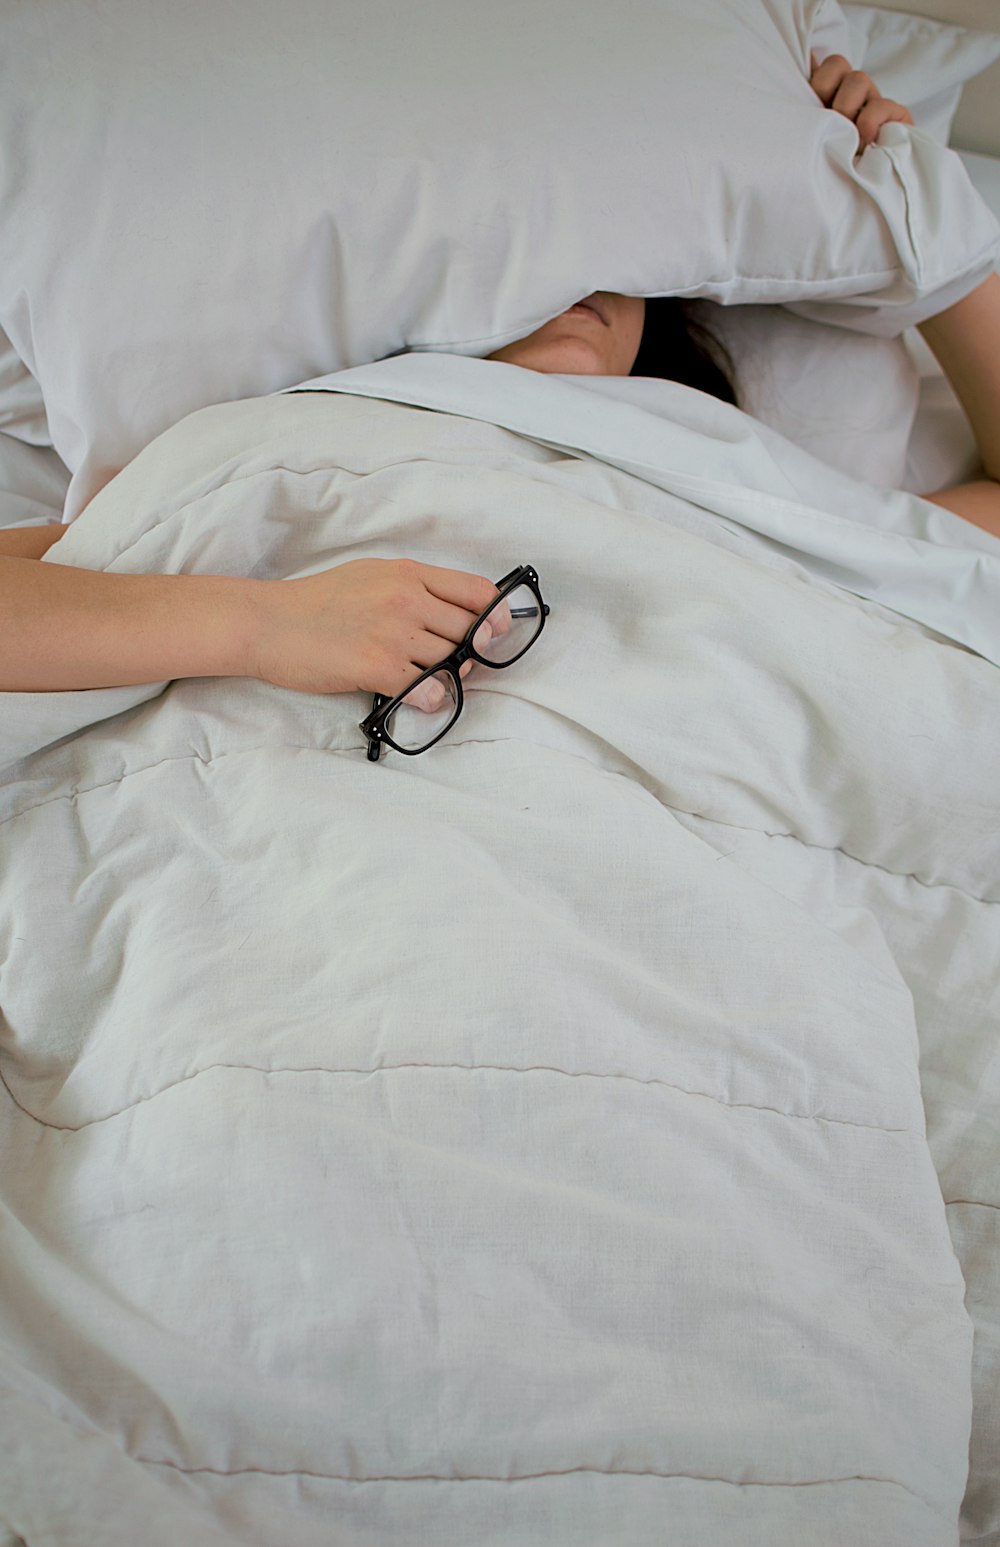 枕で顔を覆い、眼鏡をかけた状態でベッドに横たわる人